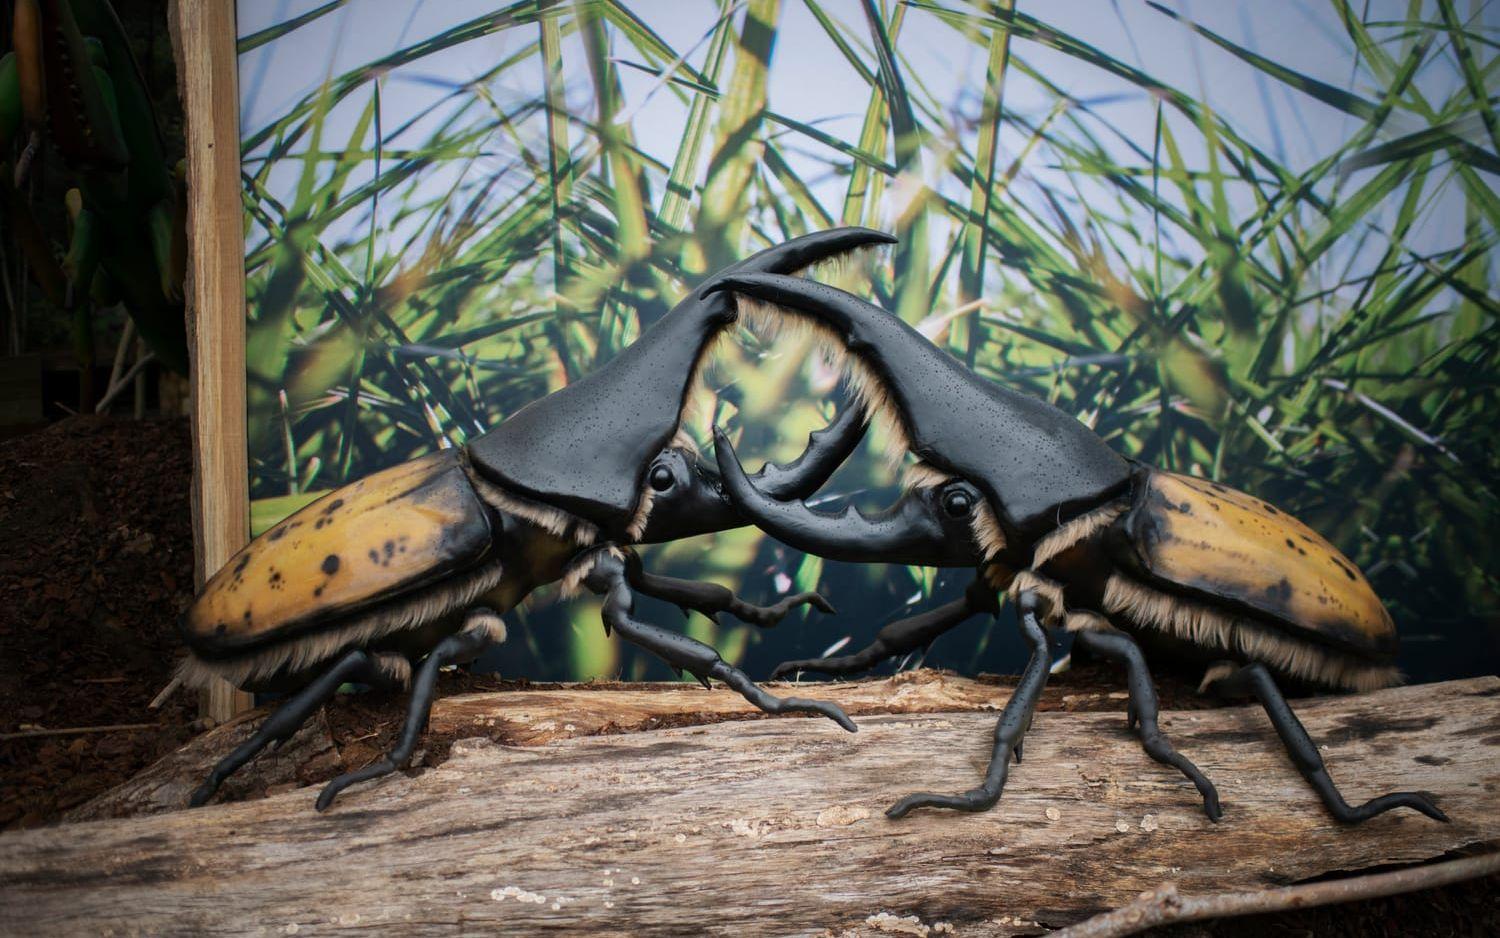 Herkulesbaggen klassas som en av världens största skalbaggar, men här är de större än vanligt.